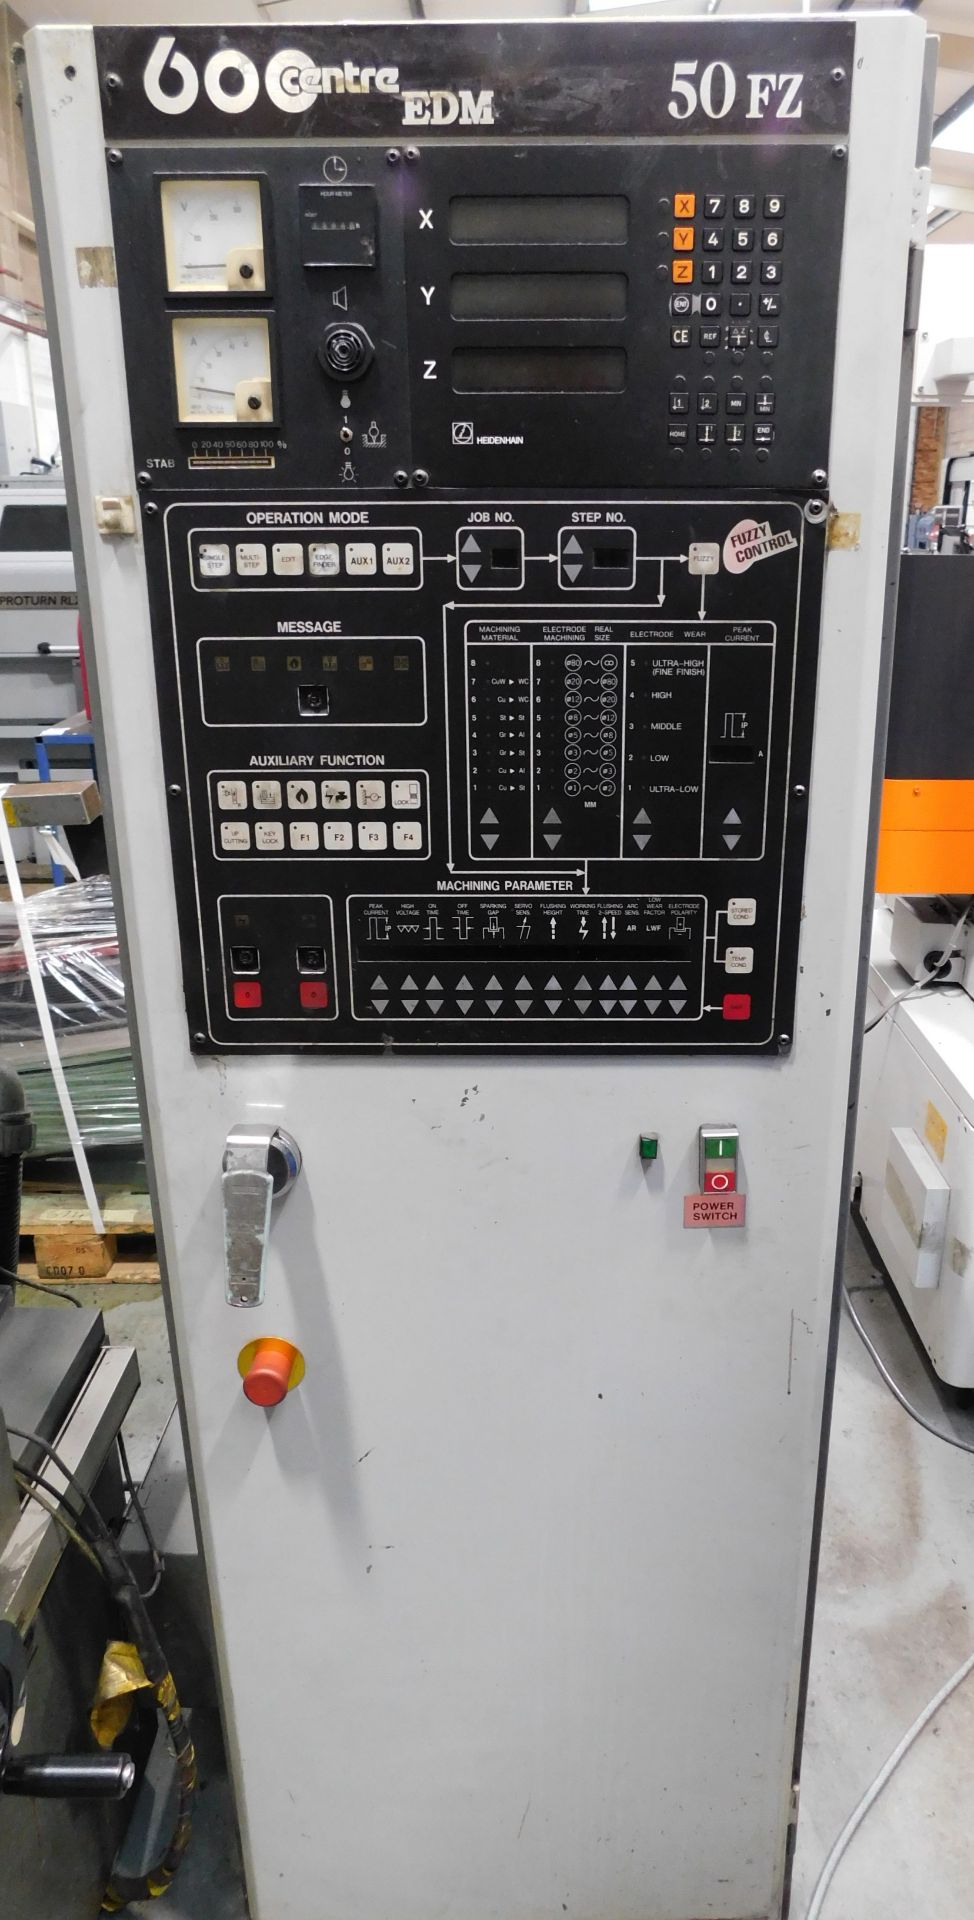 Joemars EDM 600 Centre Manual Spark Eroding Machine, Model Number JM430, Serial Number 9072827 ( - Image 14 of 21